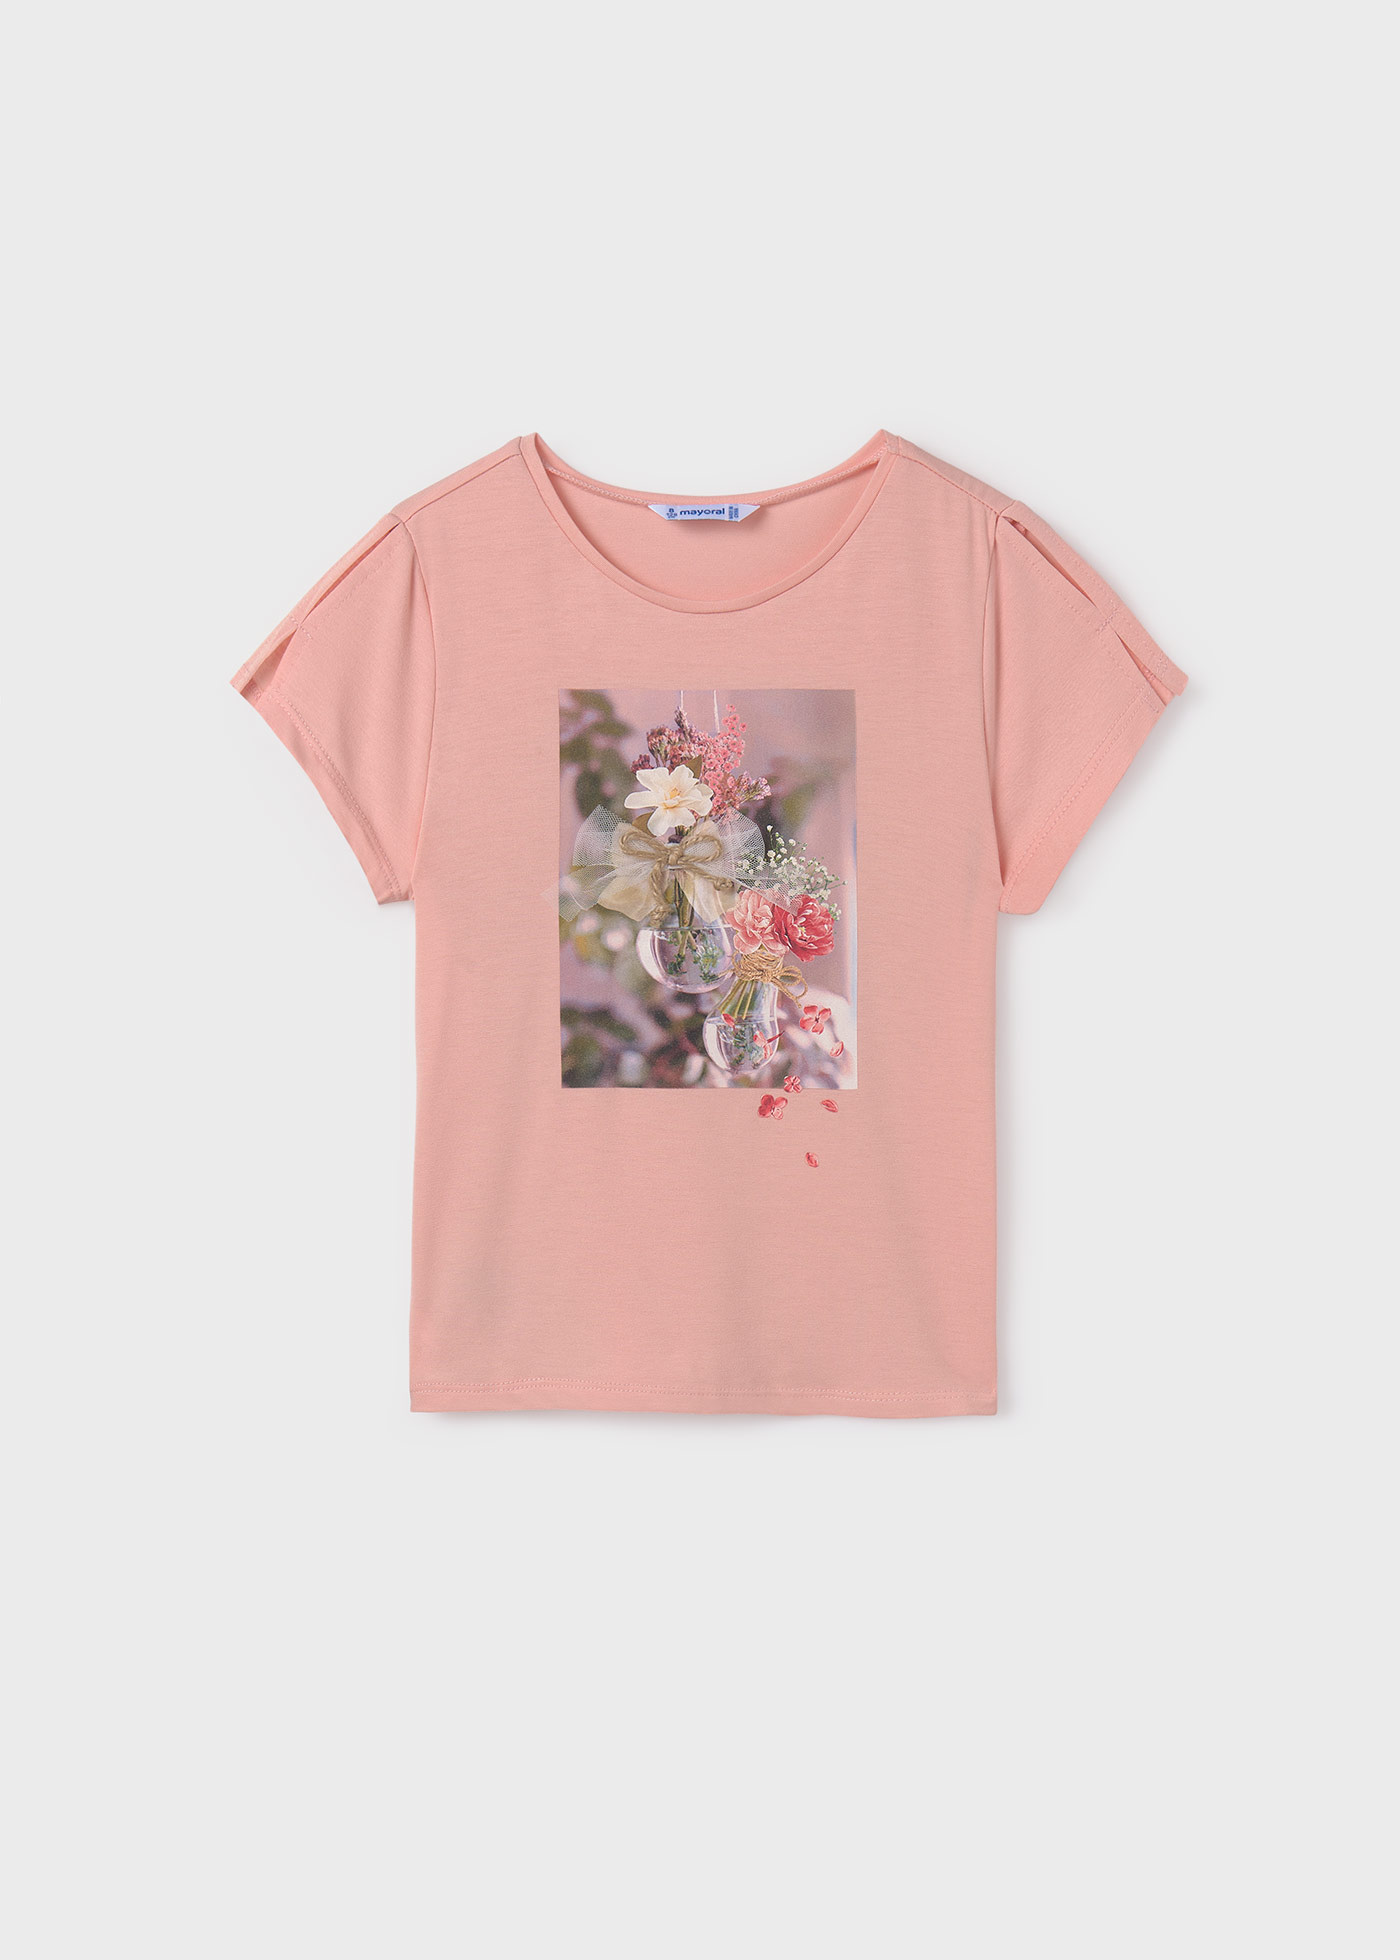 Camiseta flores chica